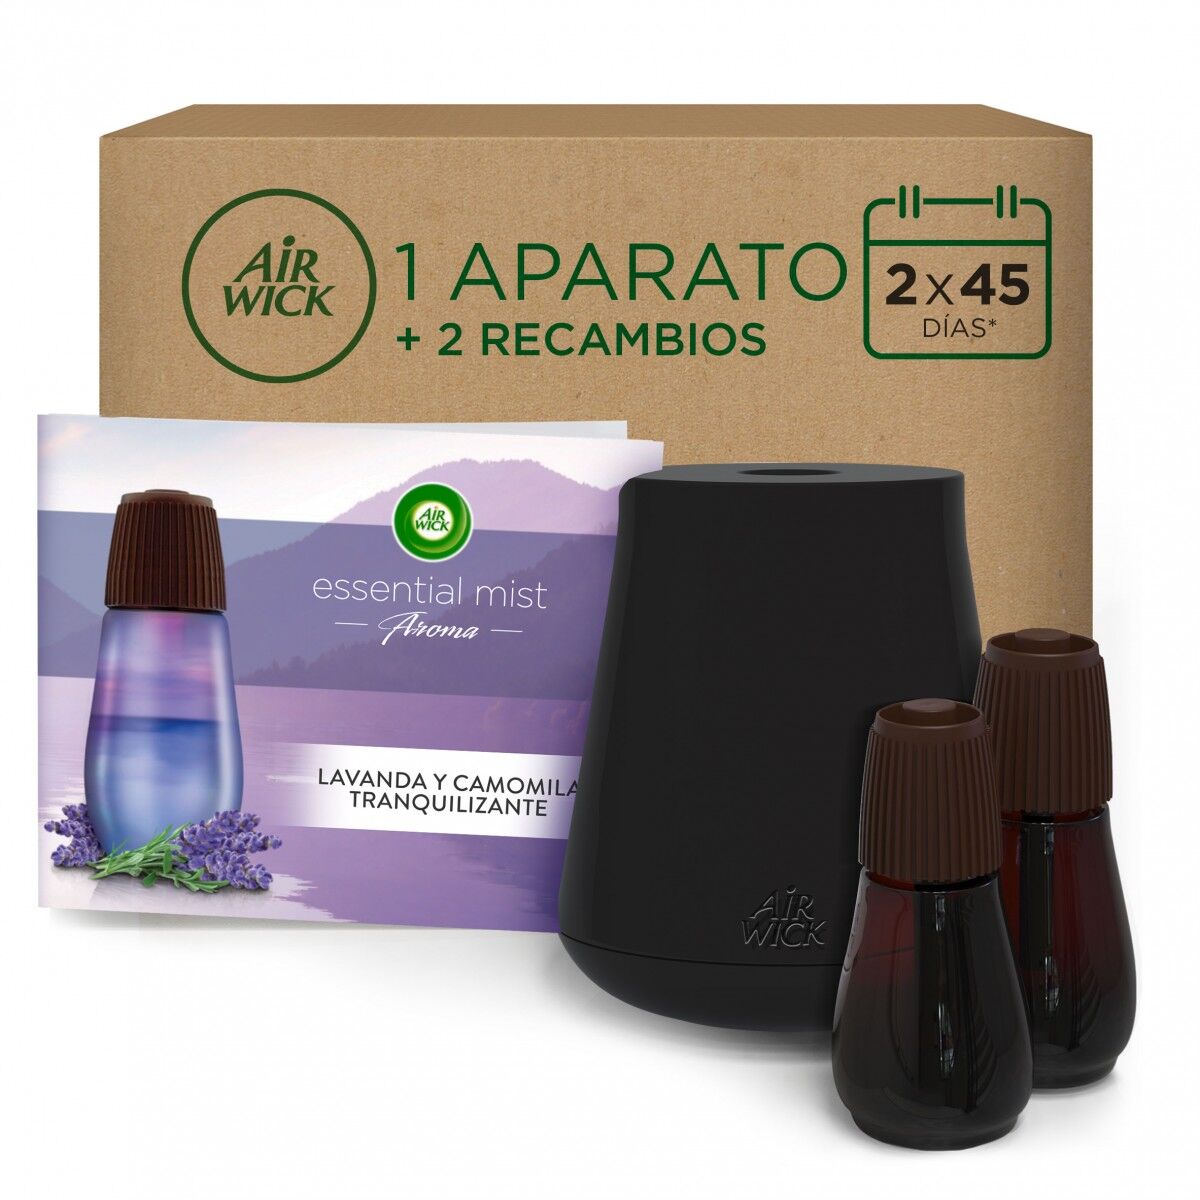 Air Wick Ambientador Essential Mist Difusor Aroma Lavanda 1 Aparato + 2 Recambios